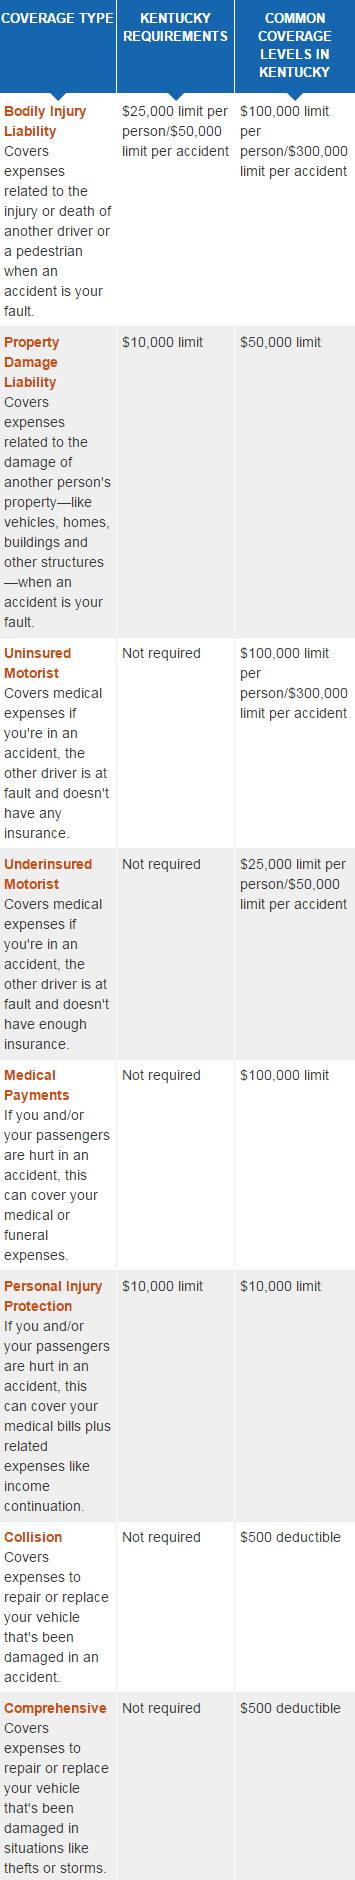 kentucky car insurance